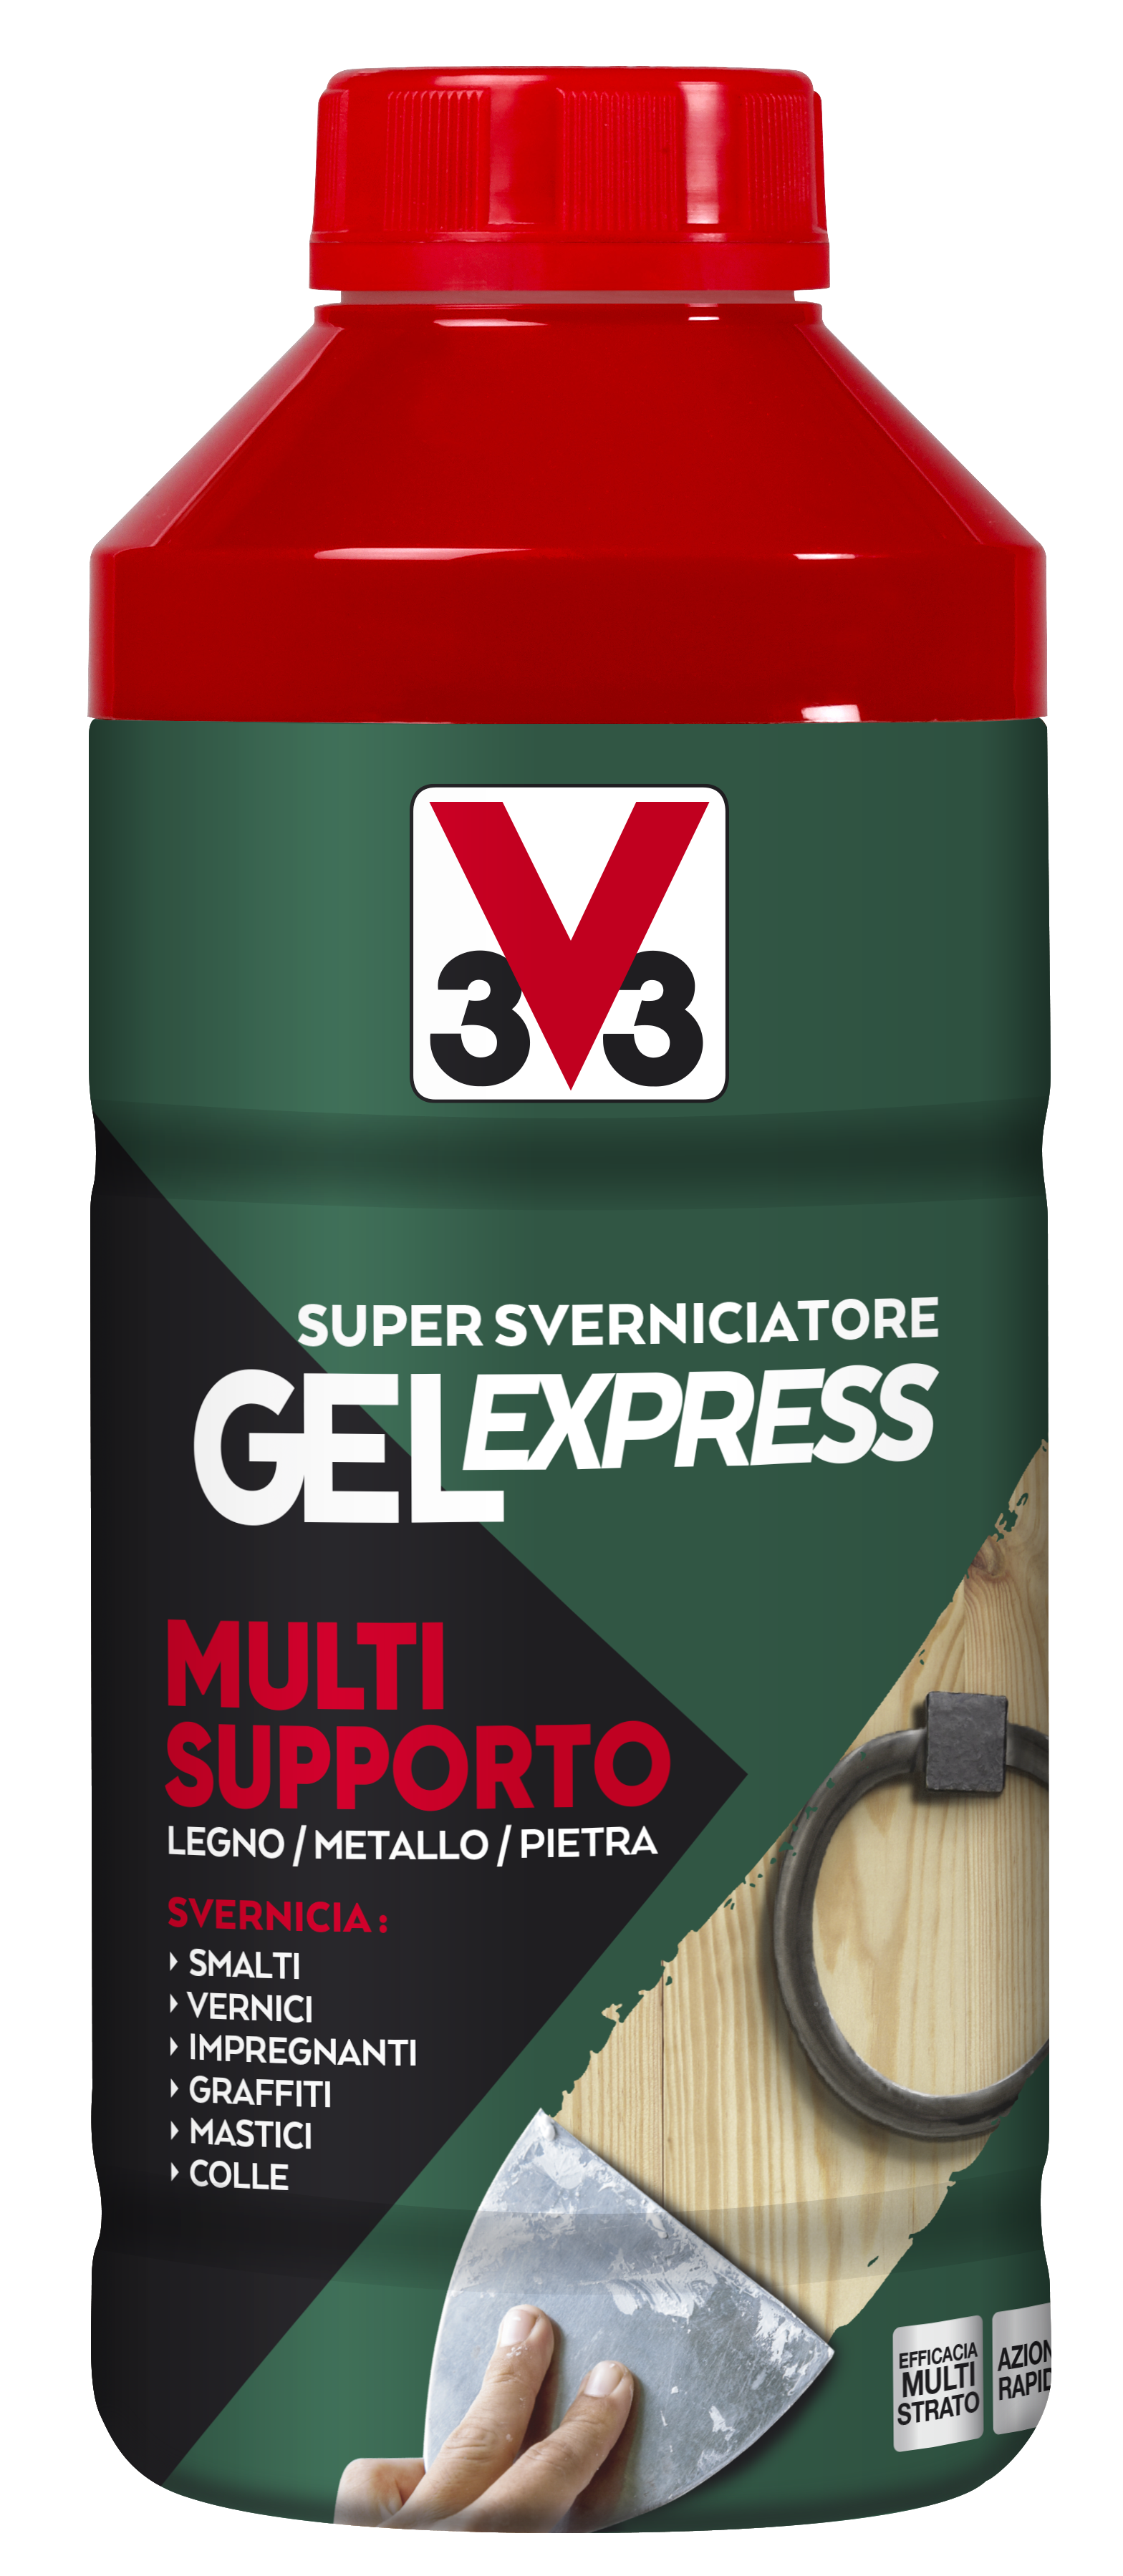 Sverniciatore Gel Express Multisupporto • V33 rimuove anche le colle